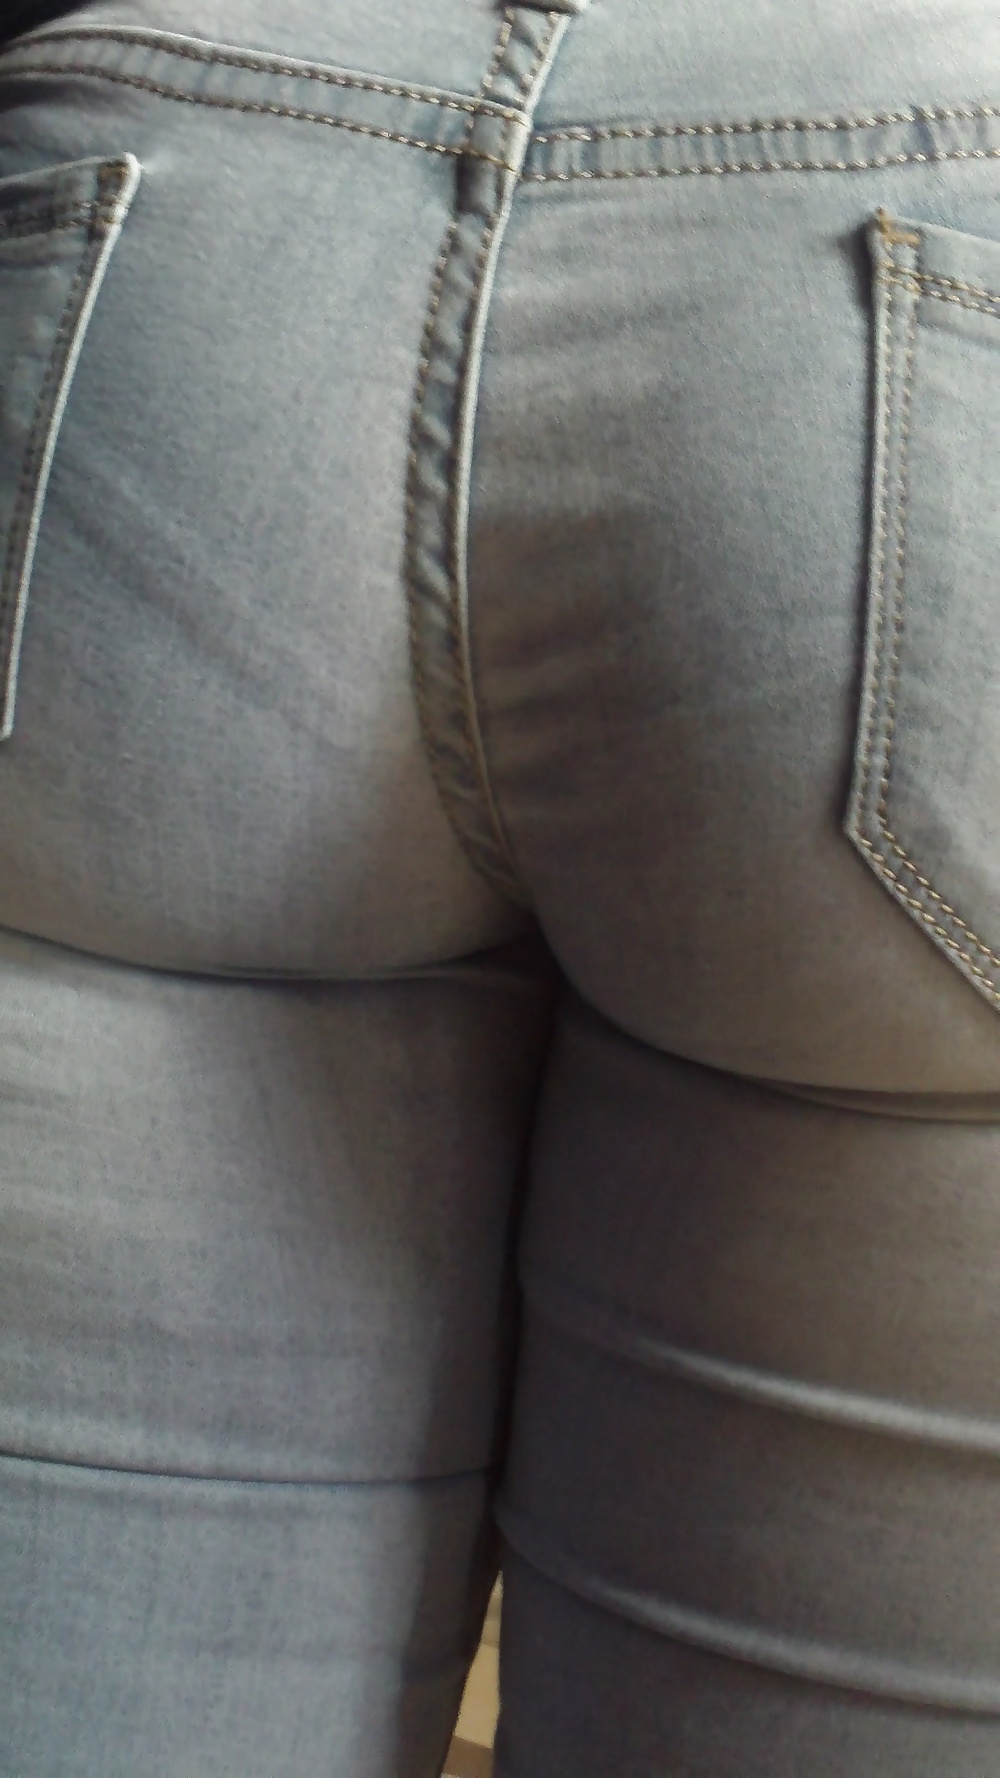 Popular teen girls ass & butt in jeans Part 6 #32010233